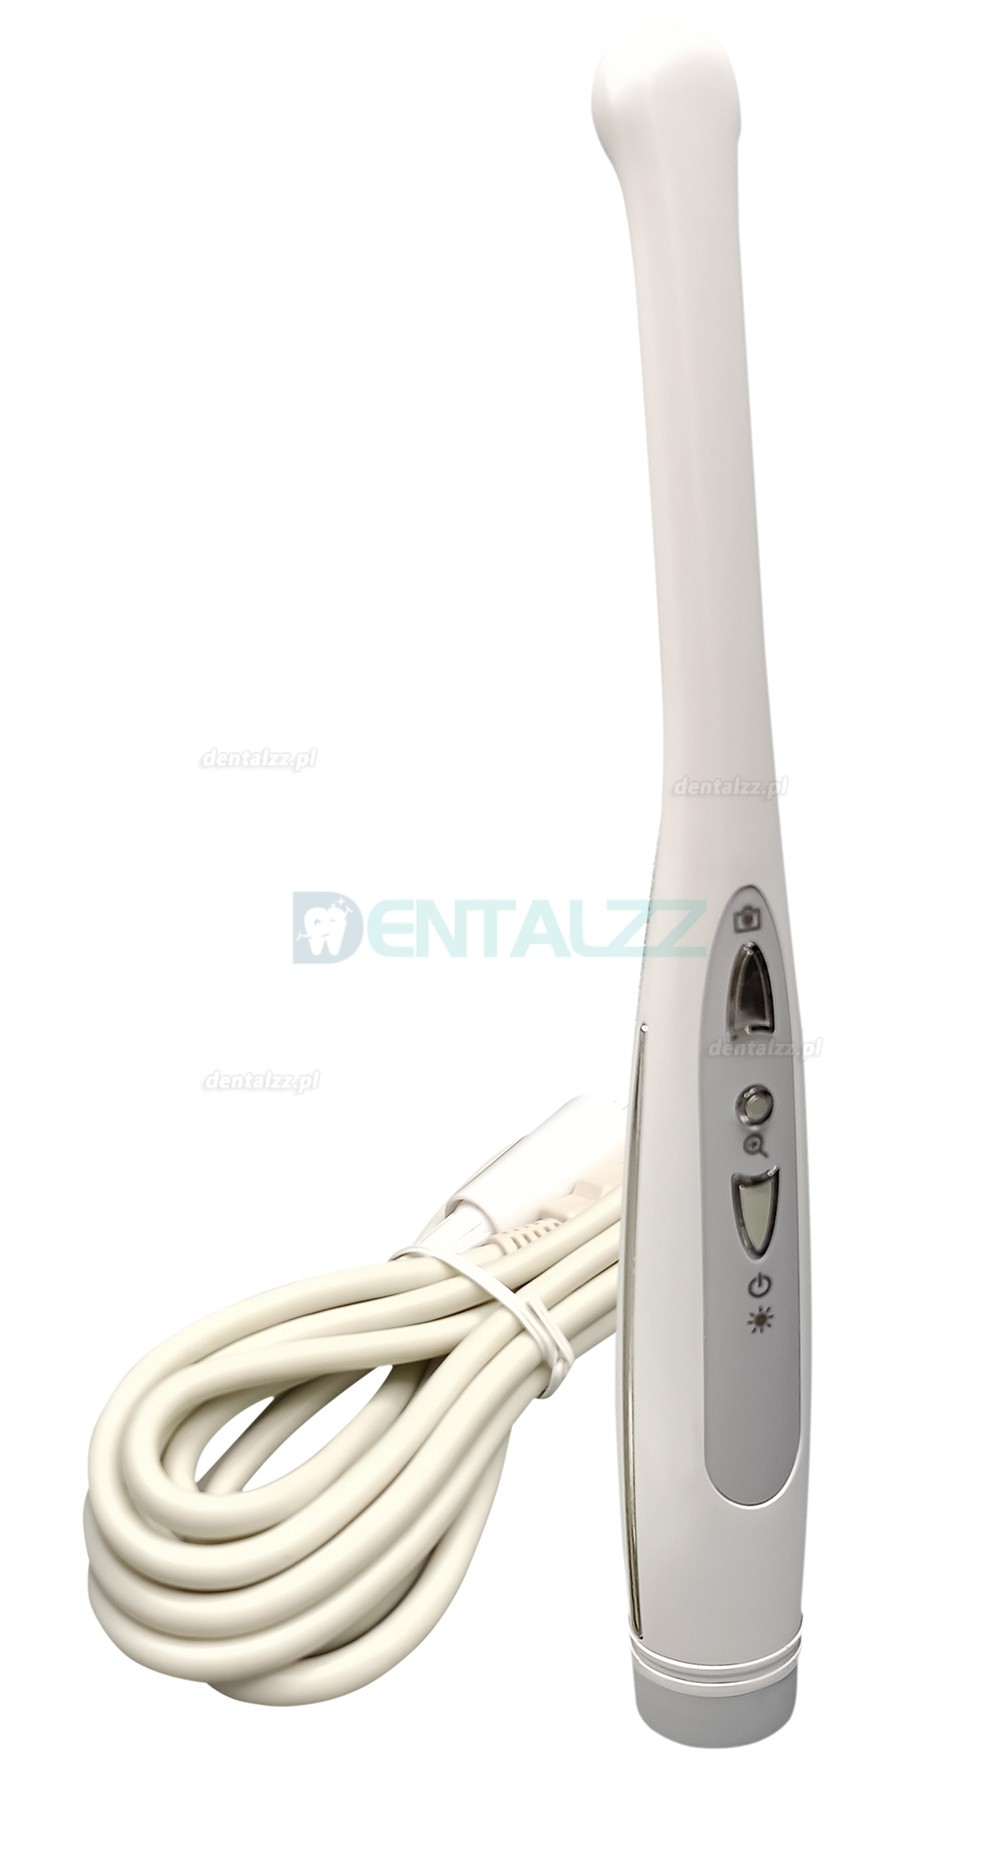 MD-1030 Dental kamera wewnątrzustna USB 1080P 30FPS o wysokiej rozdzielczości